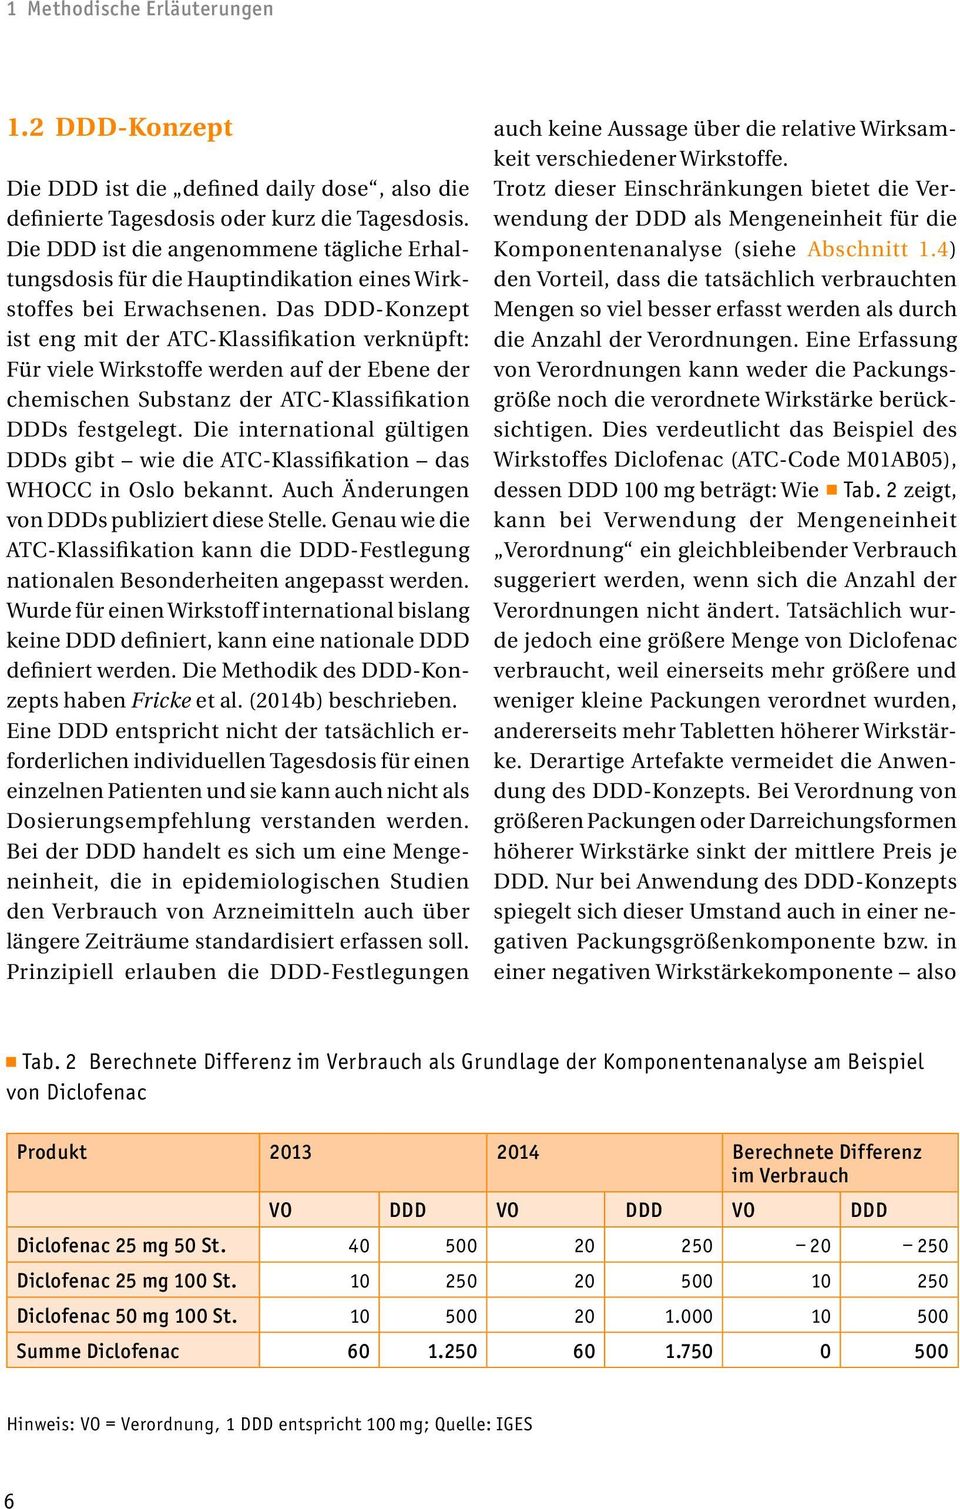 Das DDD-Konzept ist eng mit der ATC-Klassifikation verknüpft: Für viele Wirkstoffe werden auf der Ebene der chemischen Substanz der ATC-Klassifikation DDDs festgelegt.